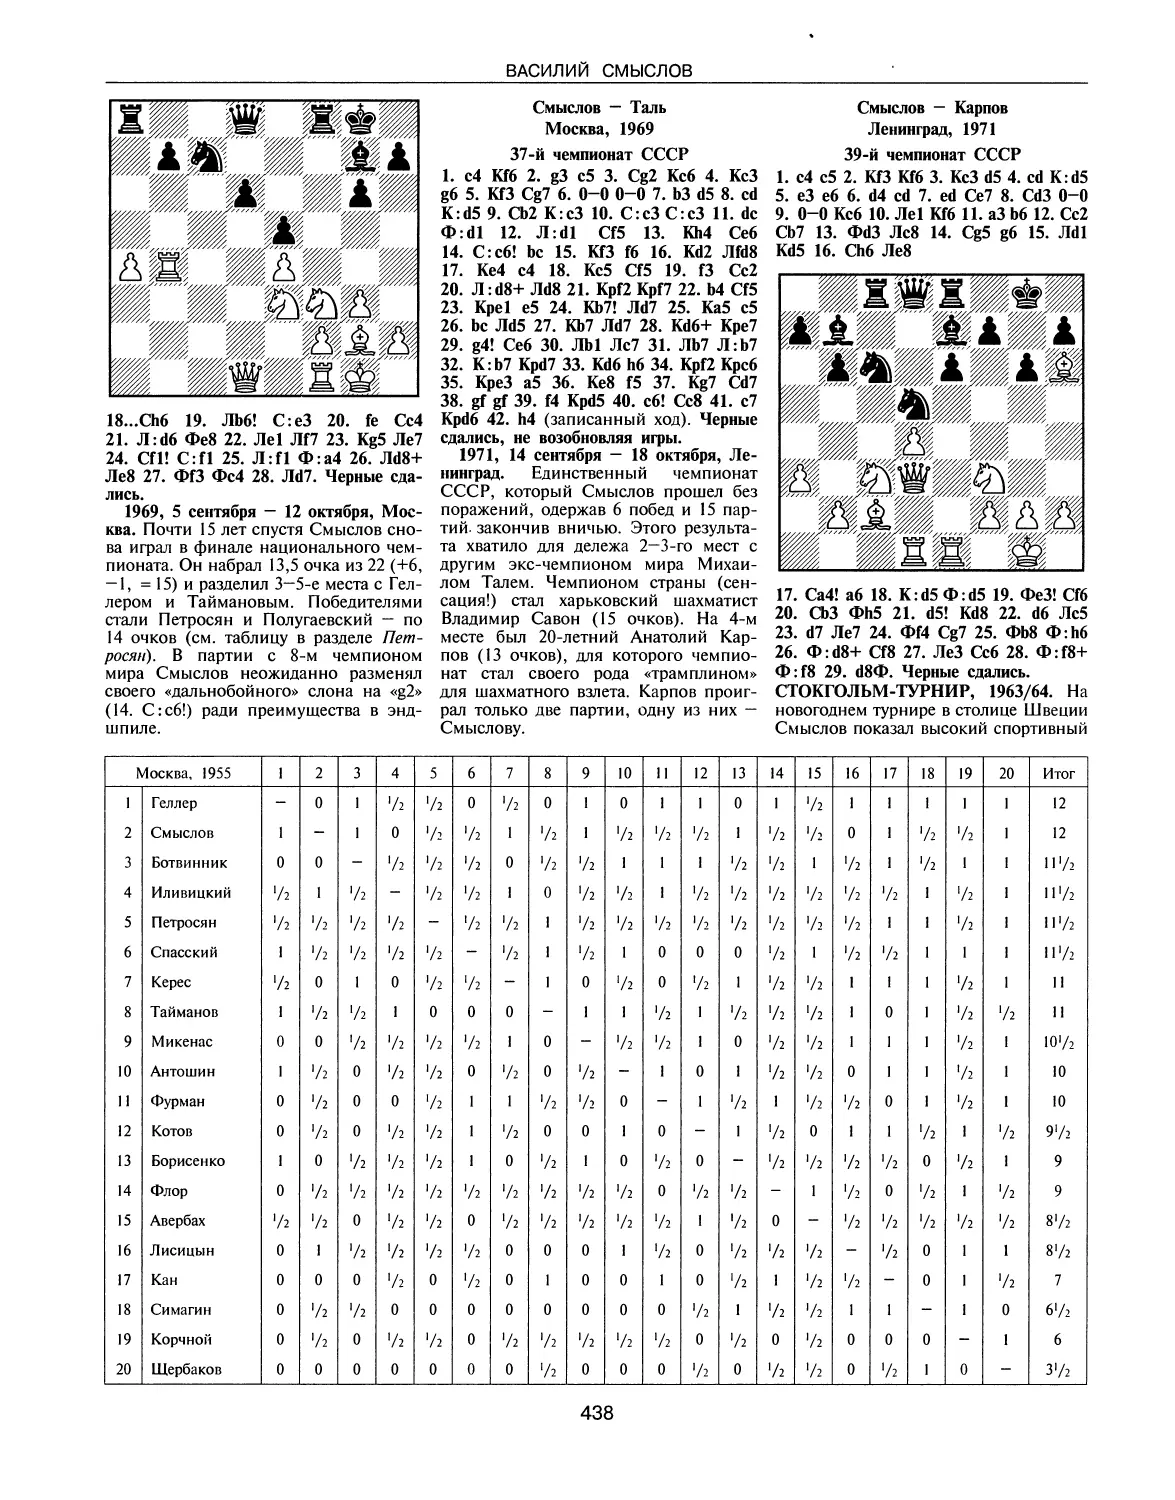 Стокгольм-турнир, 1963/64